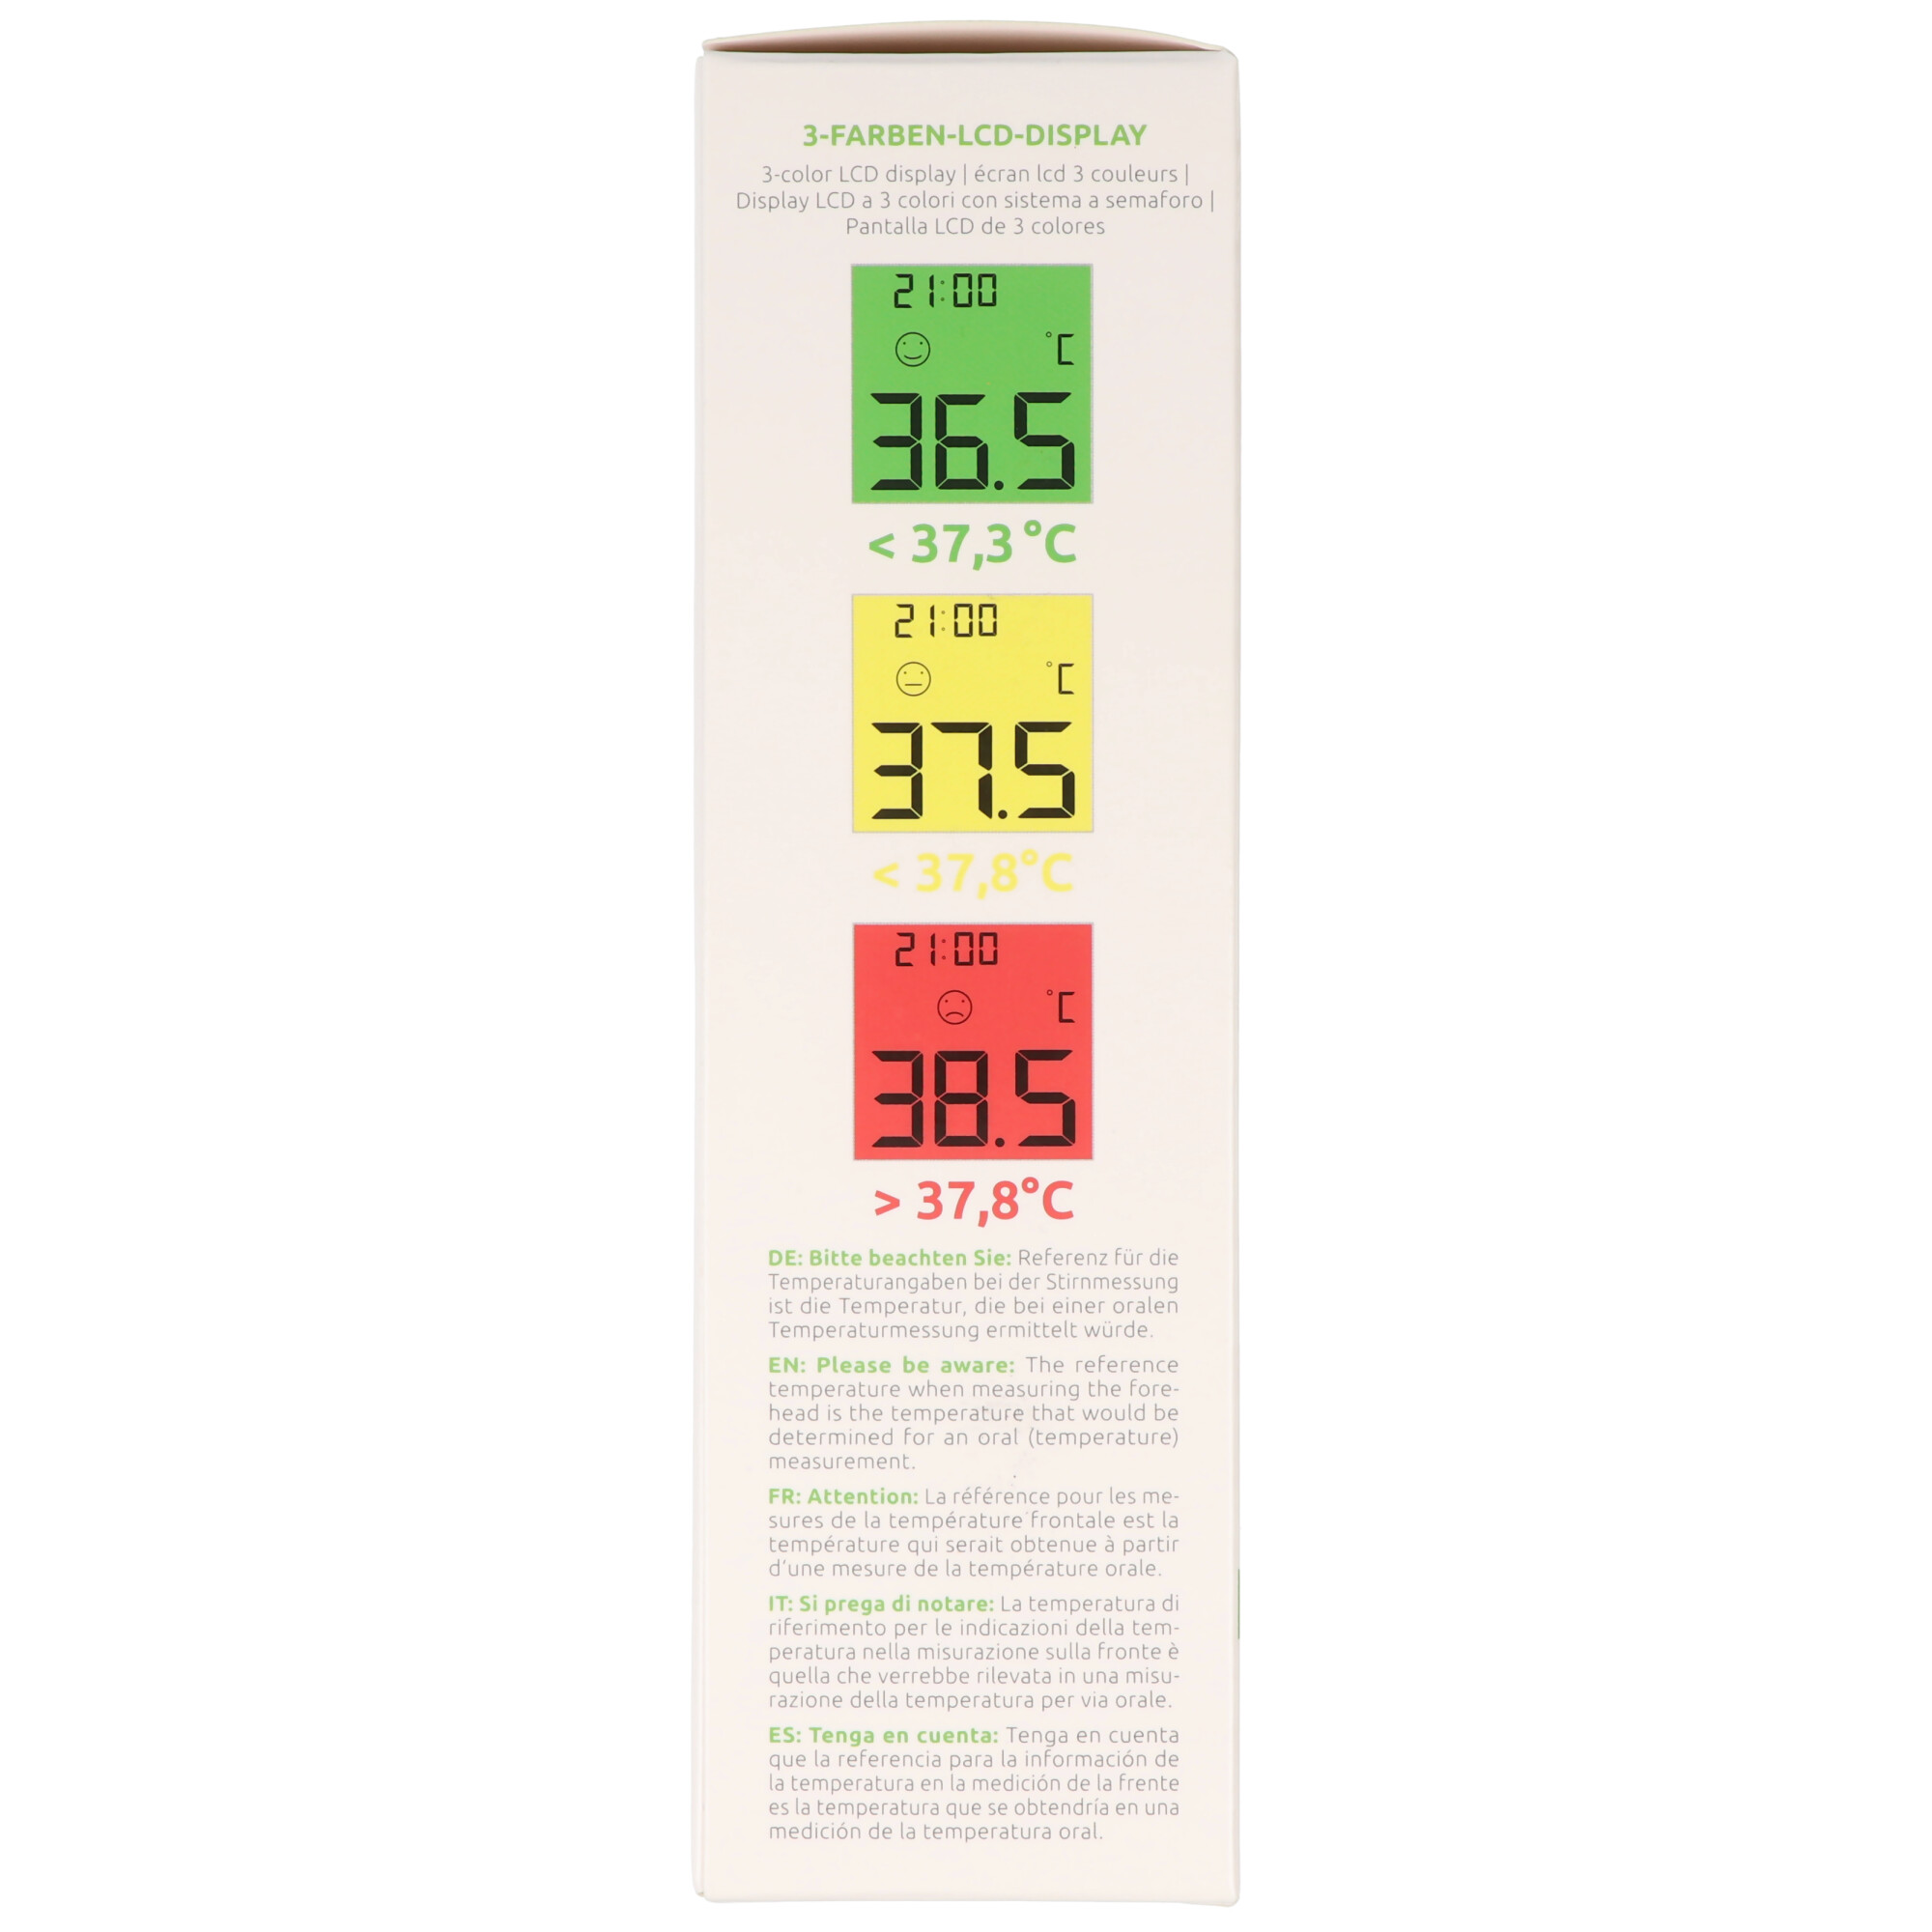 Dr. Senst® Infrarot Stirn-Thermometer DET-306 kontaktlos & sicher